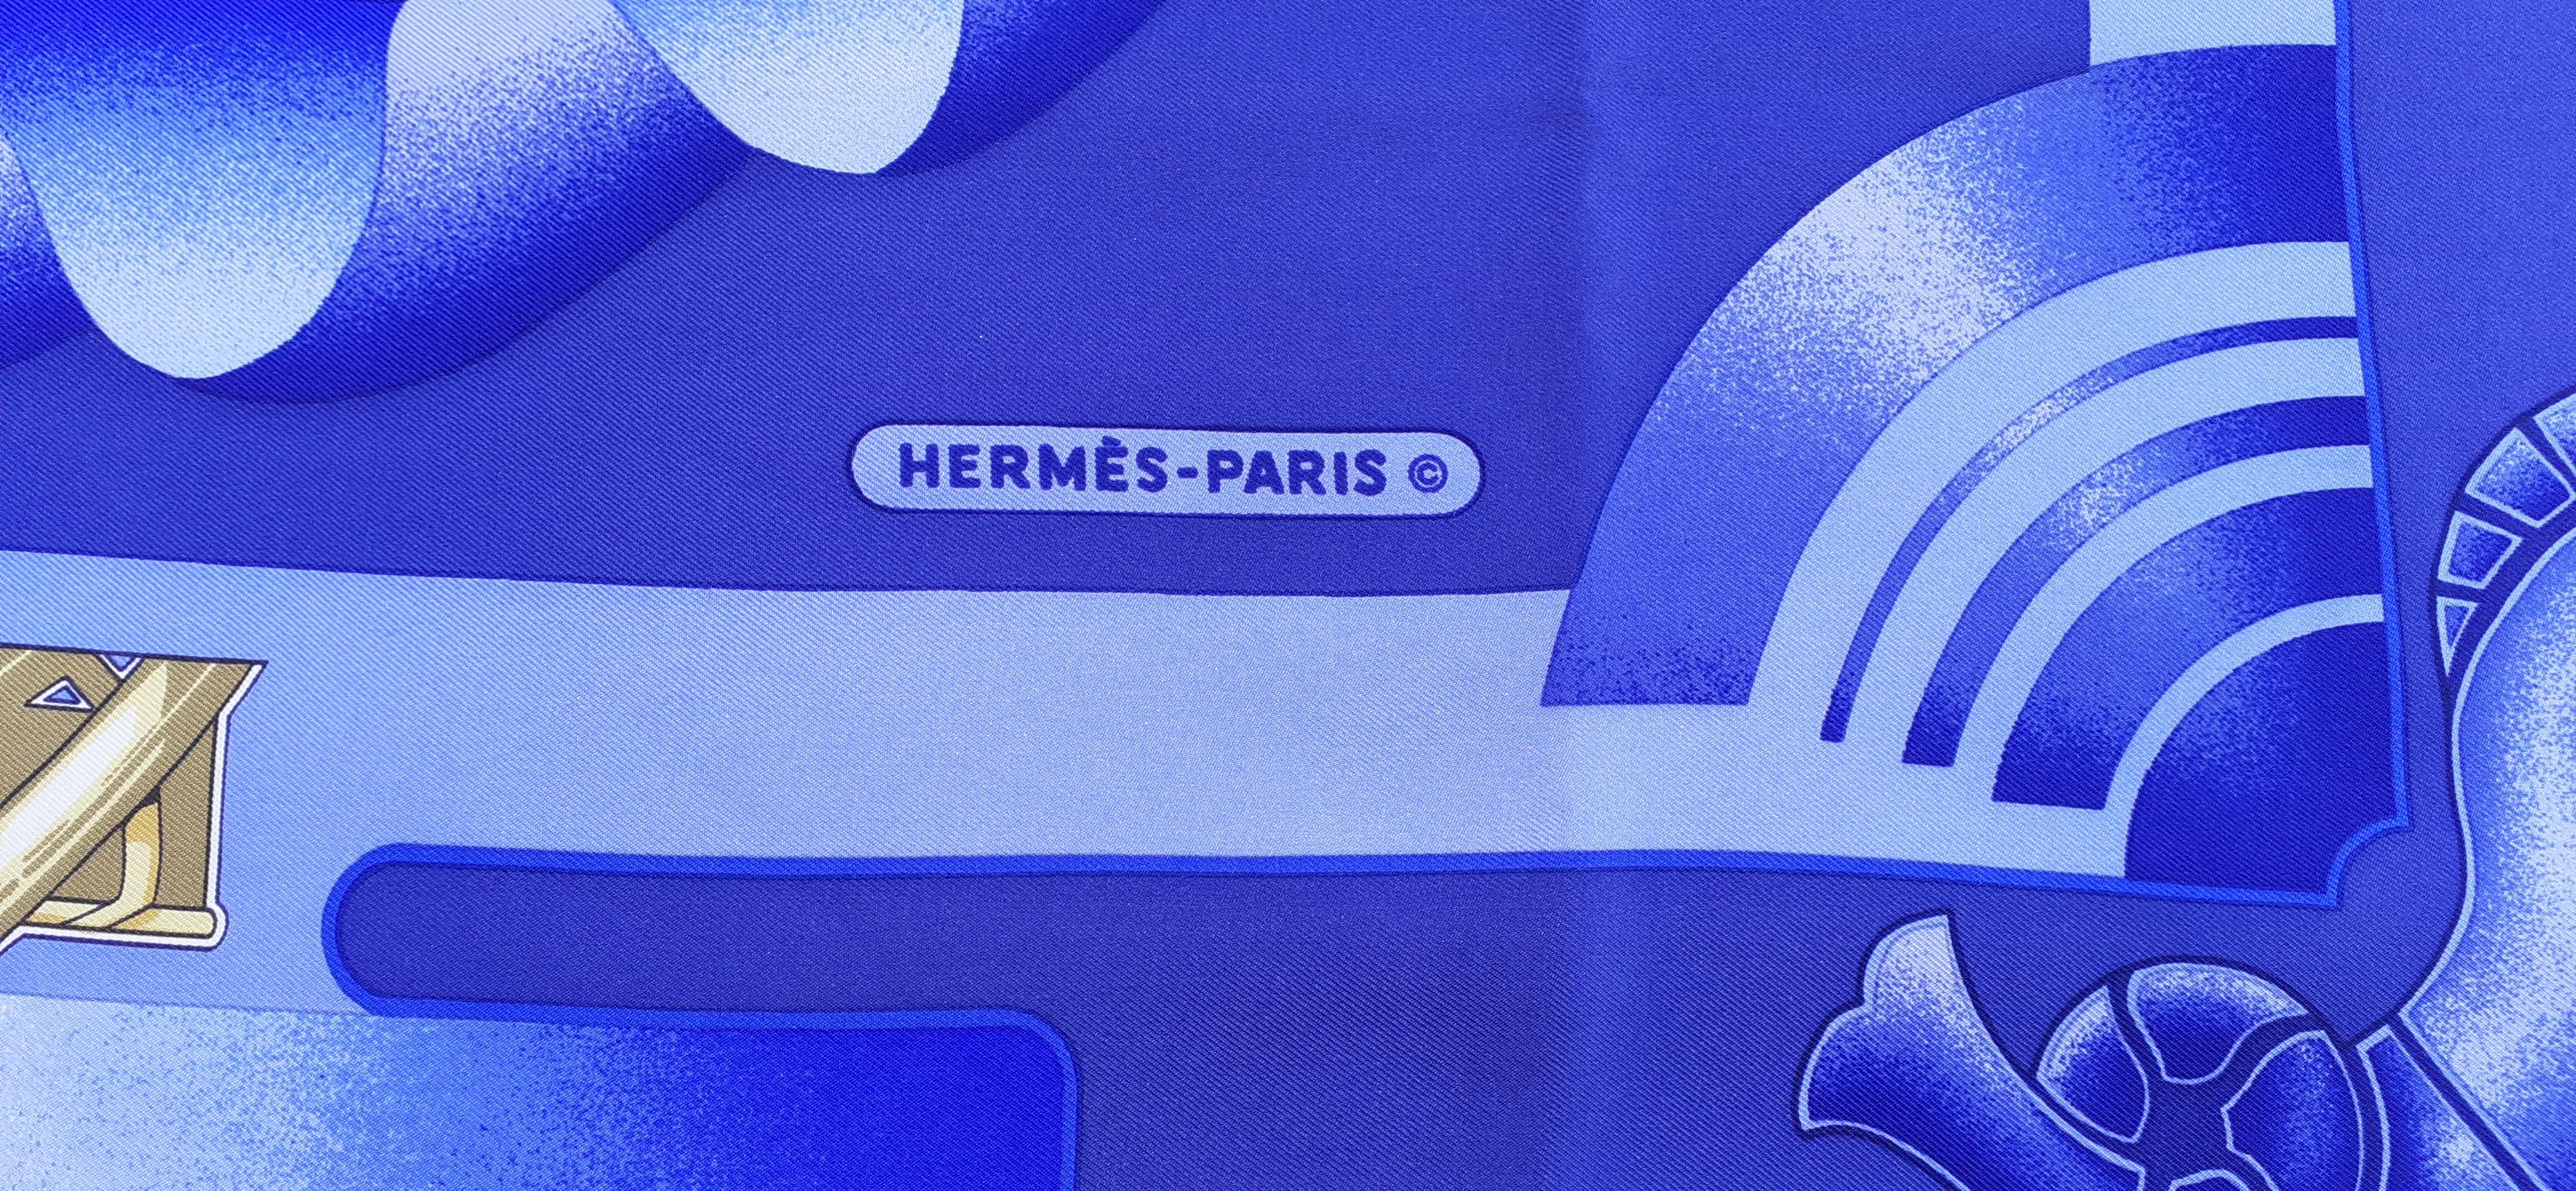 Hermès Seidenschal Verkauft exklusiv an Bord von Air France Flugzeugen Ledoux 1962 Selten im Angebot 2